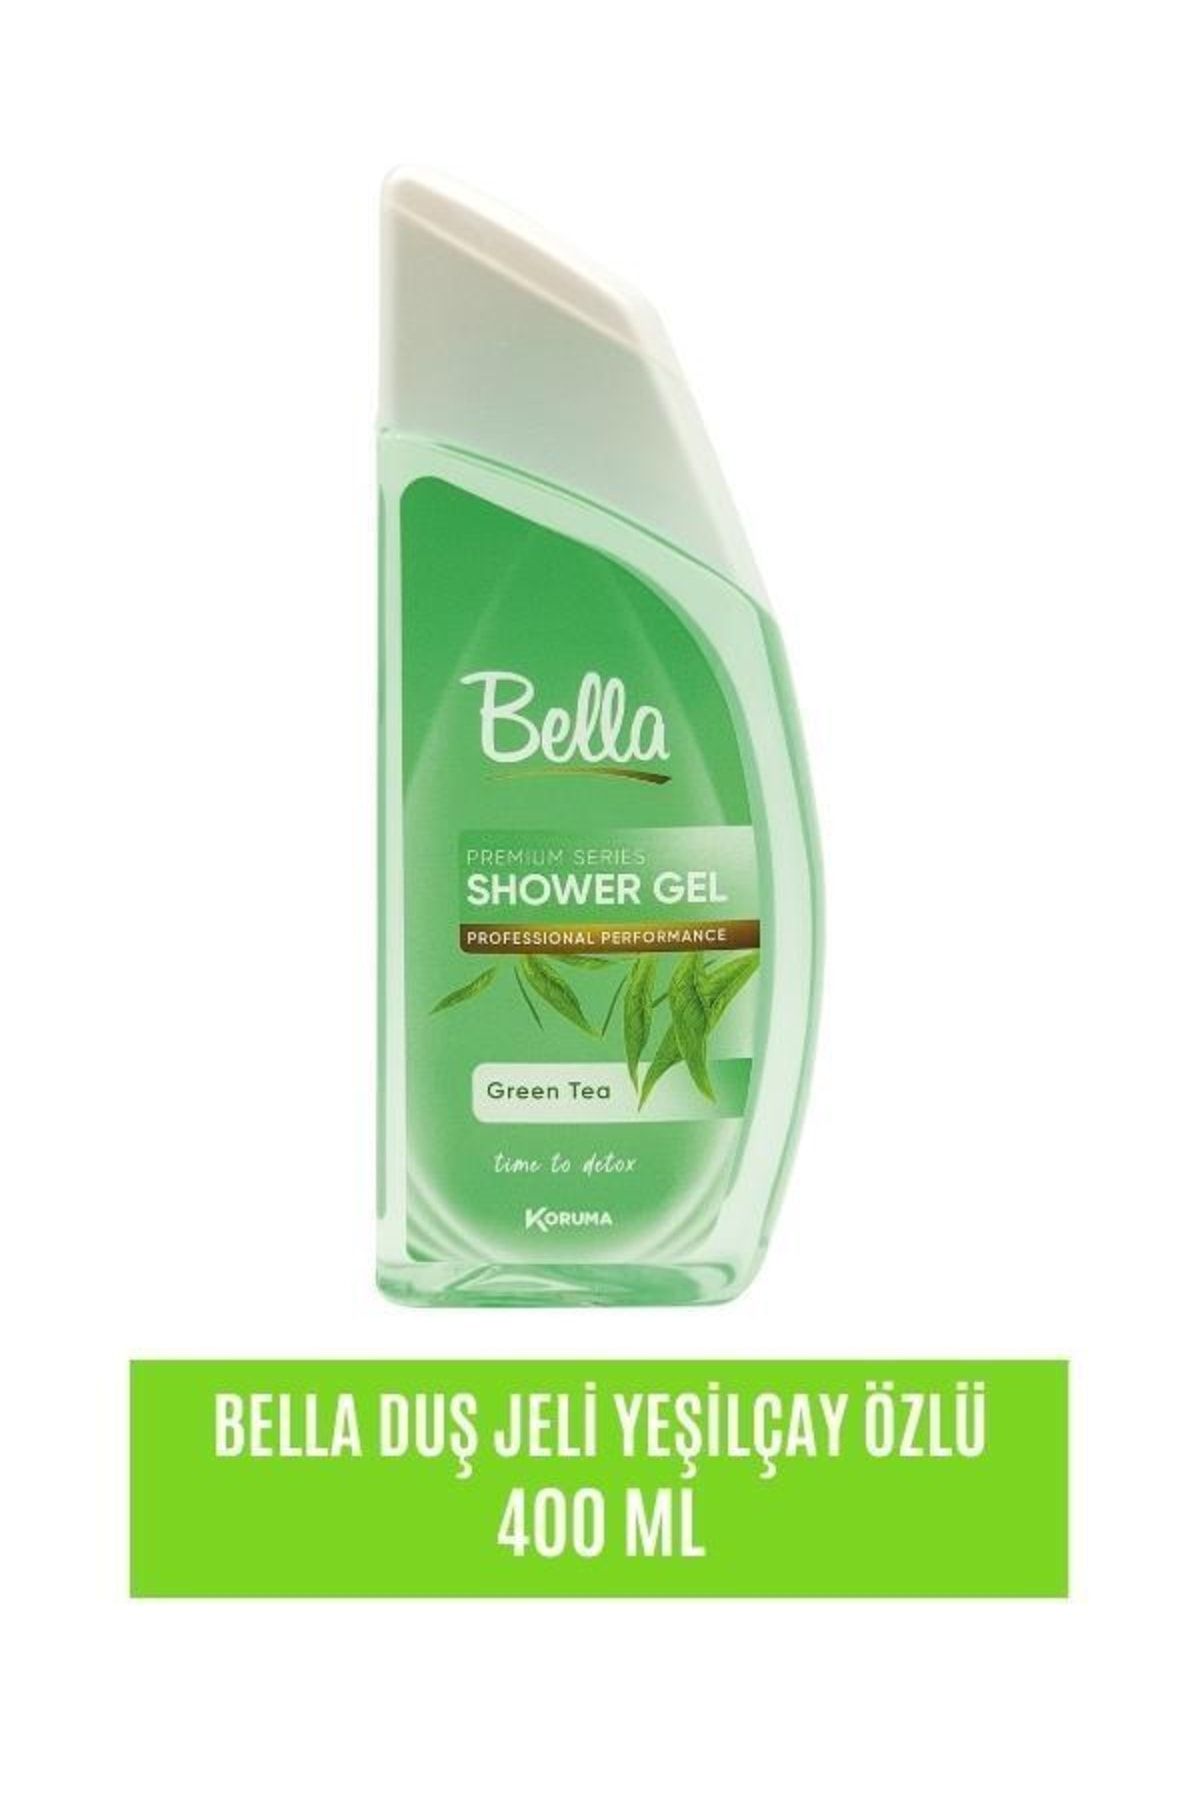 Bella Duş Jeli Yeşil Çay Özlü - 400 Ml